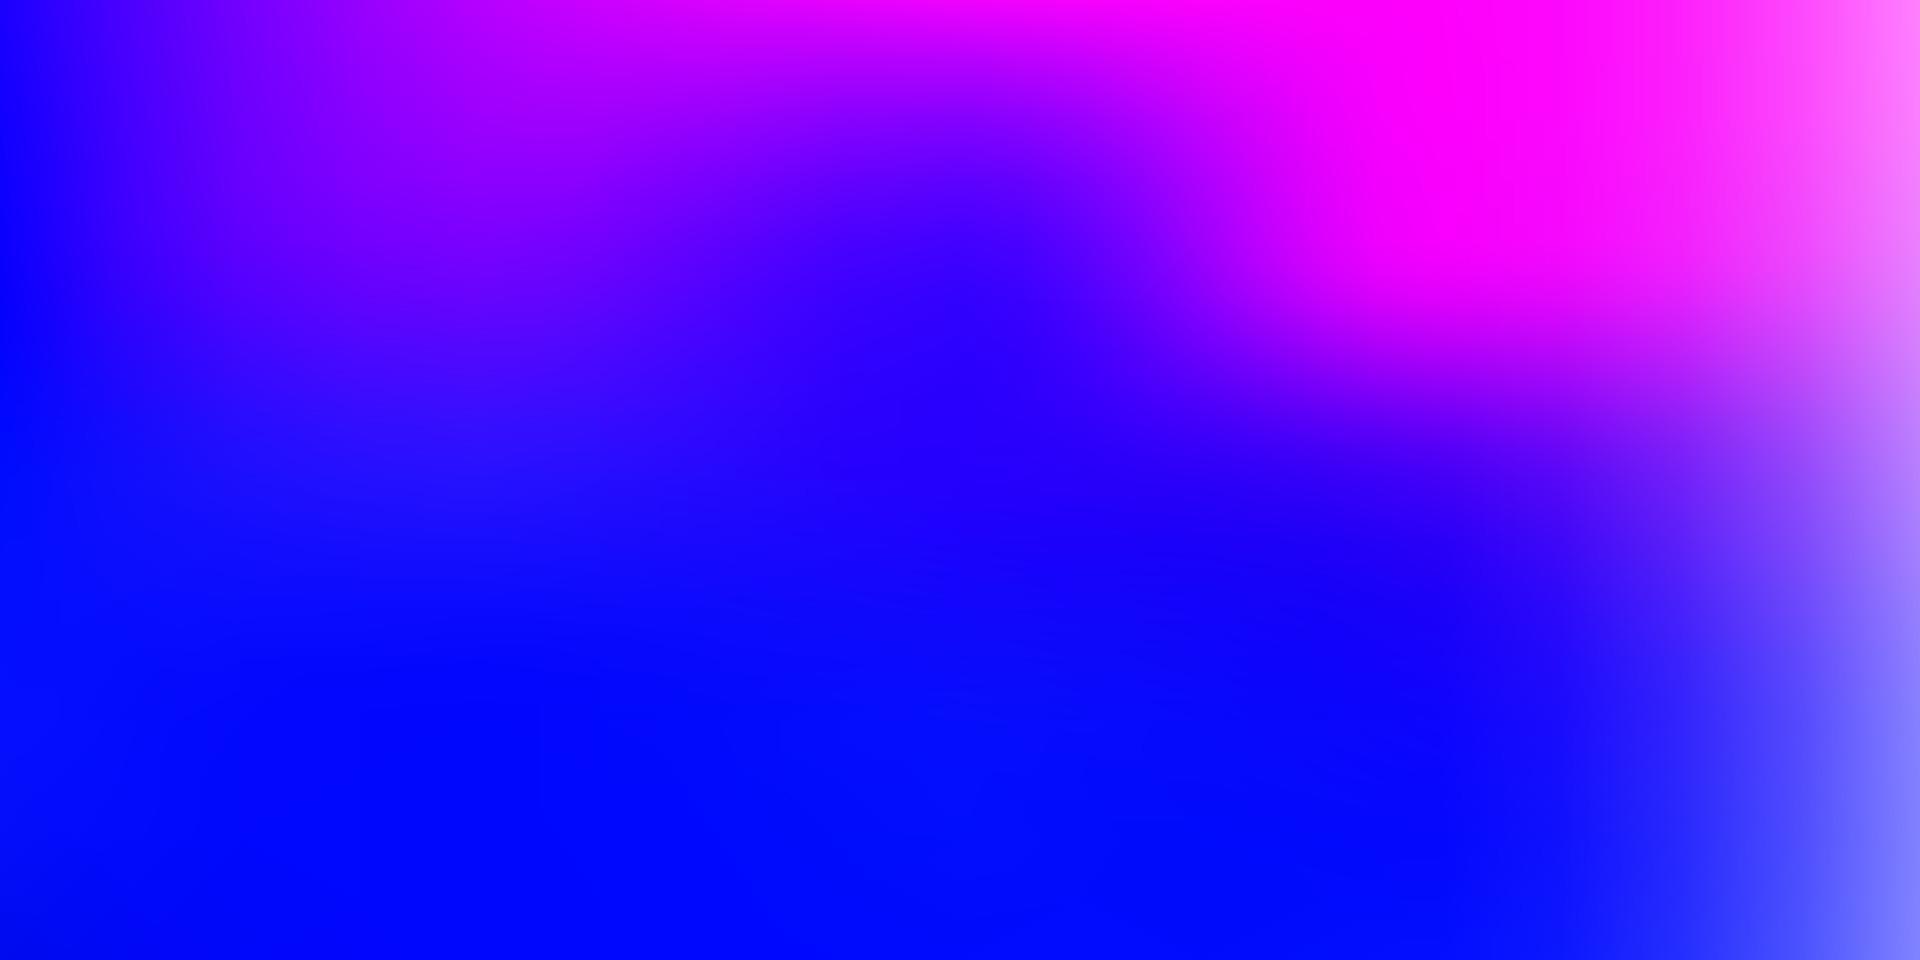 ljusrosa, blå vektor gradient oskärpa mall.